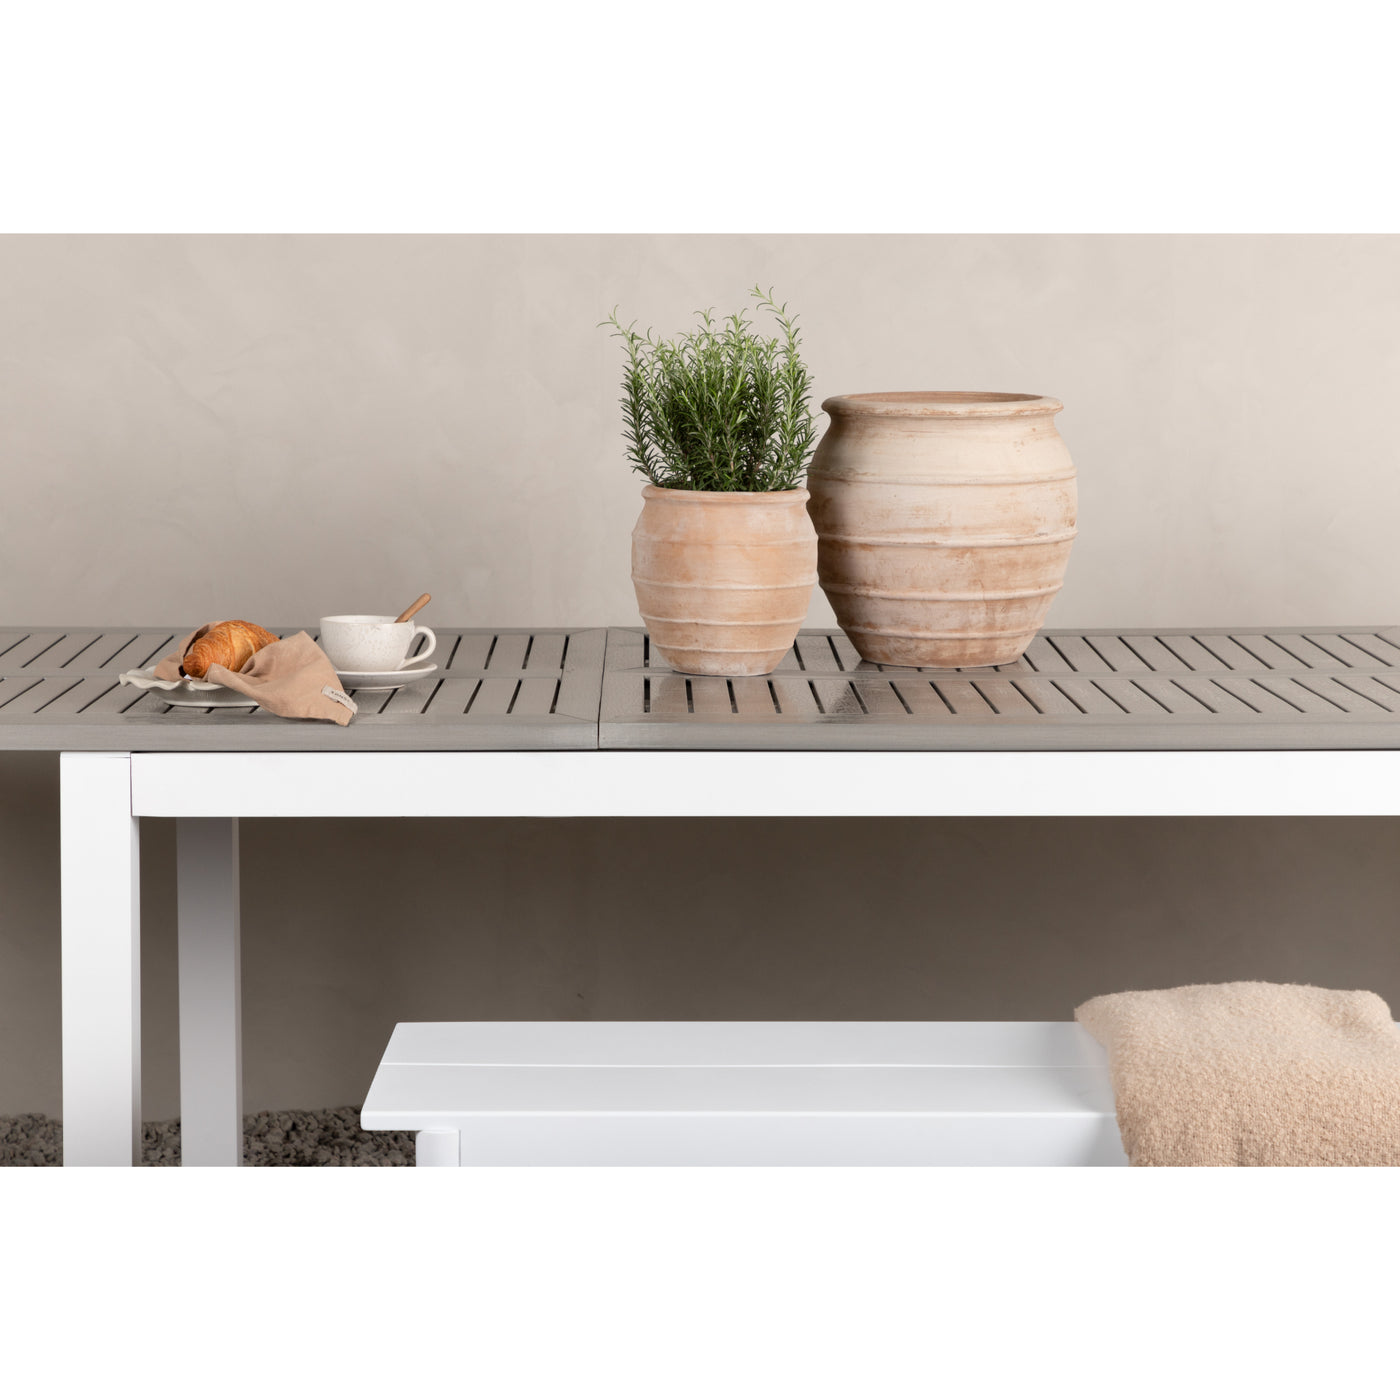 Alamea Tisch – 224/324 – Weiß/Grau